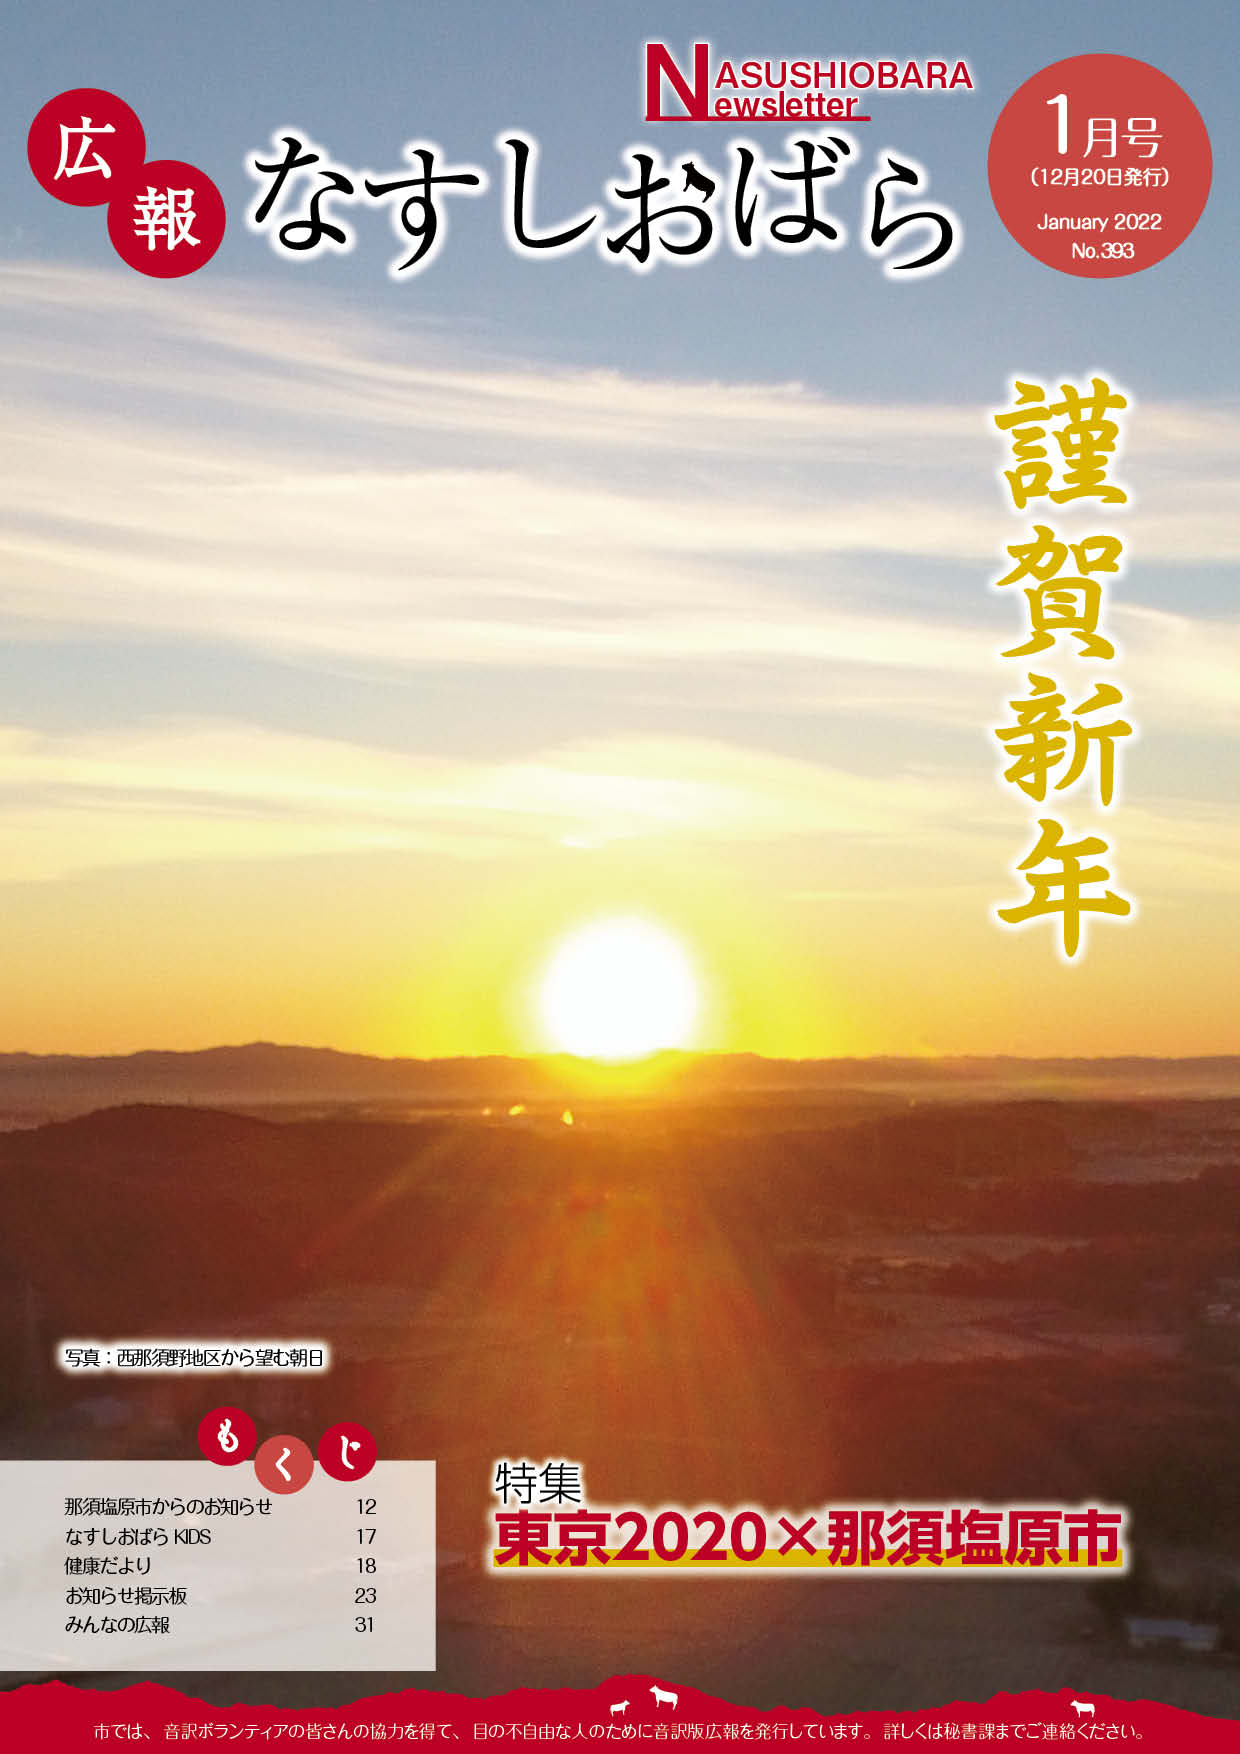 広報なすしおばら1月号表紙「西那須野地区から望む朝日」